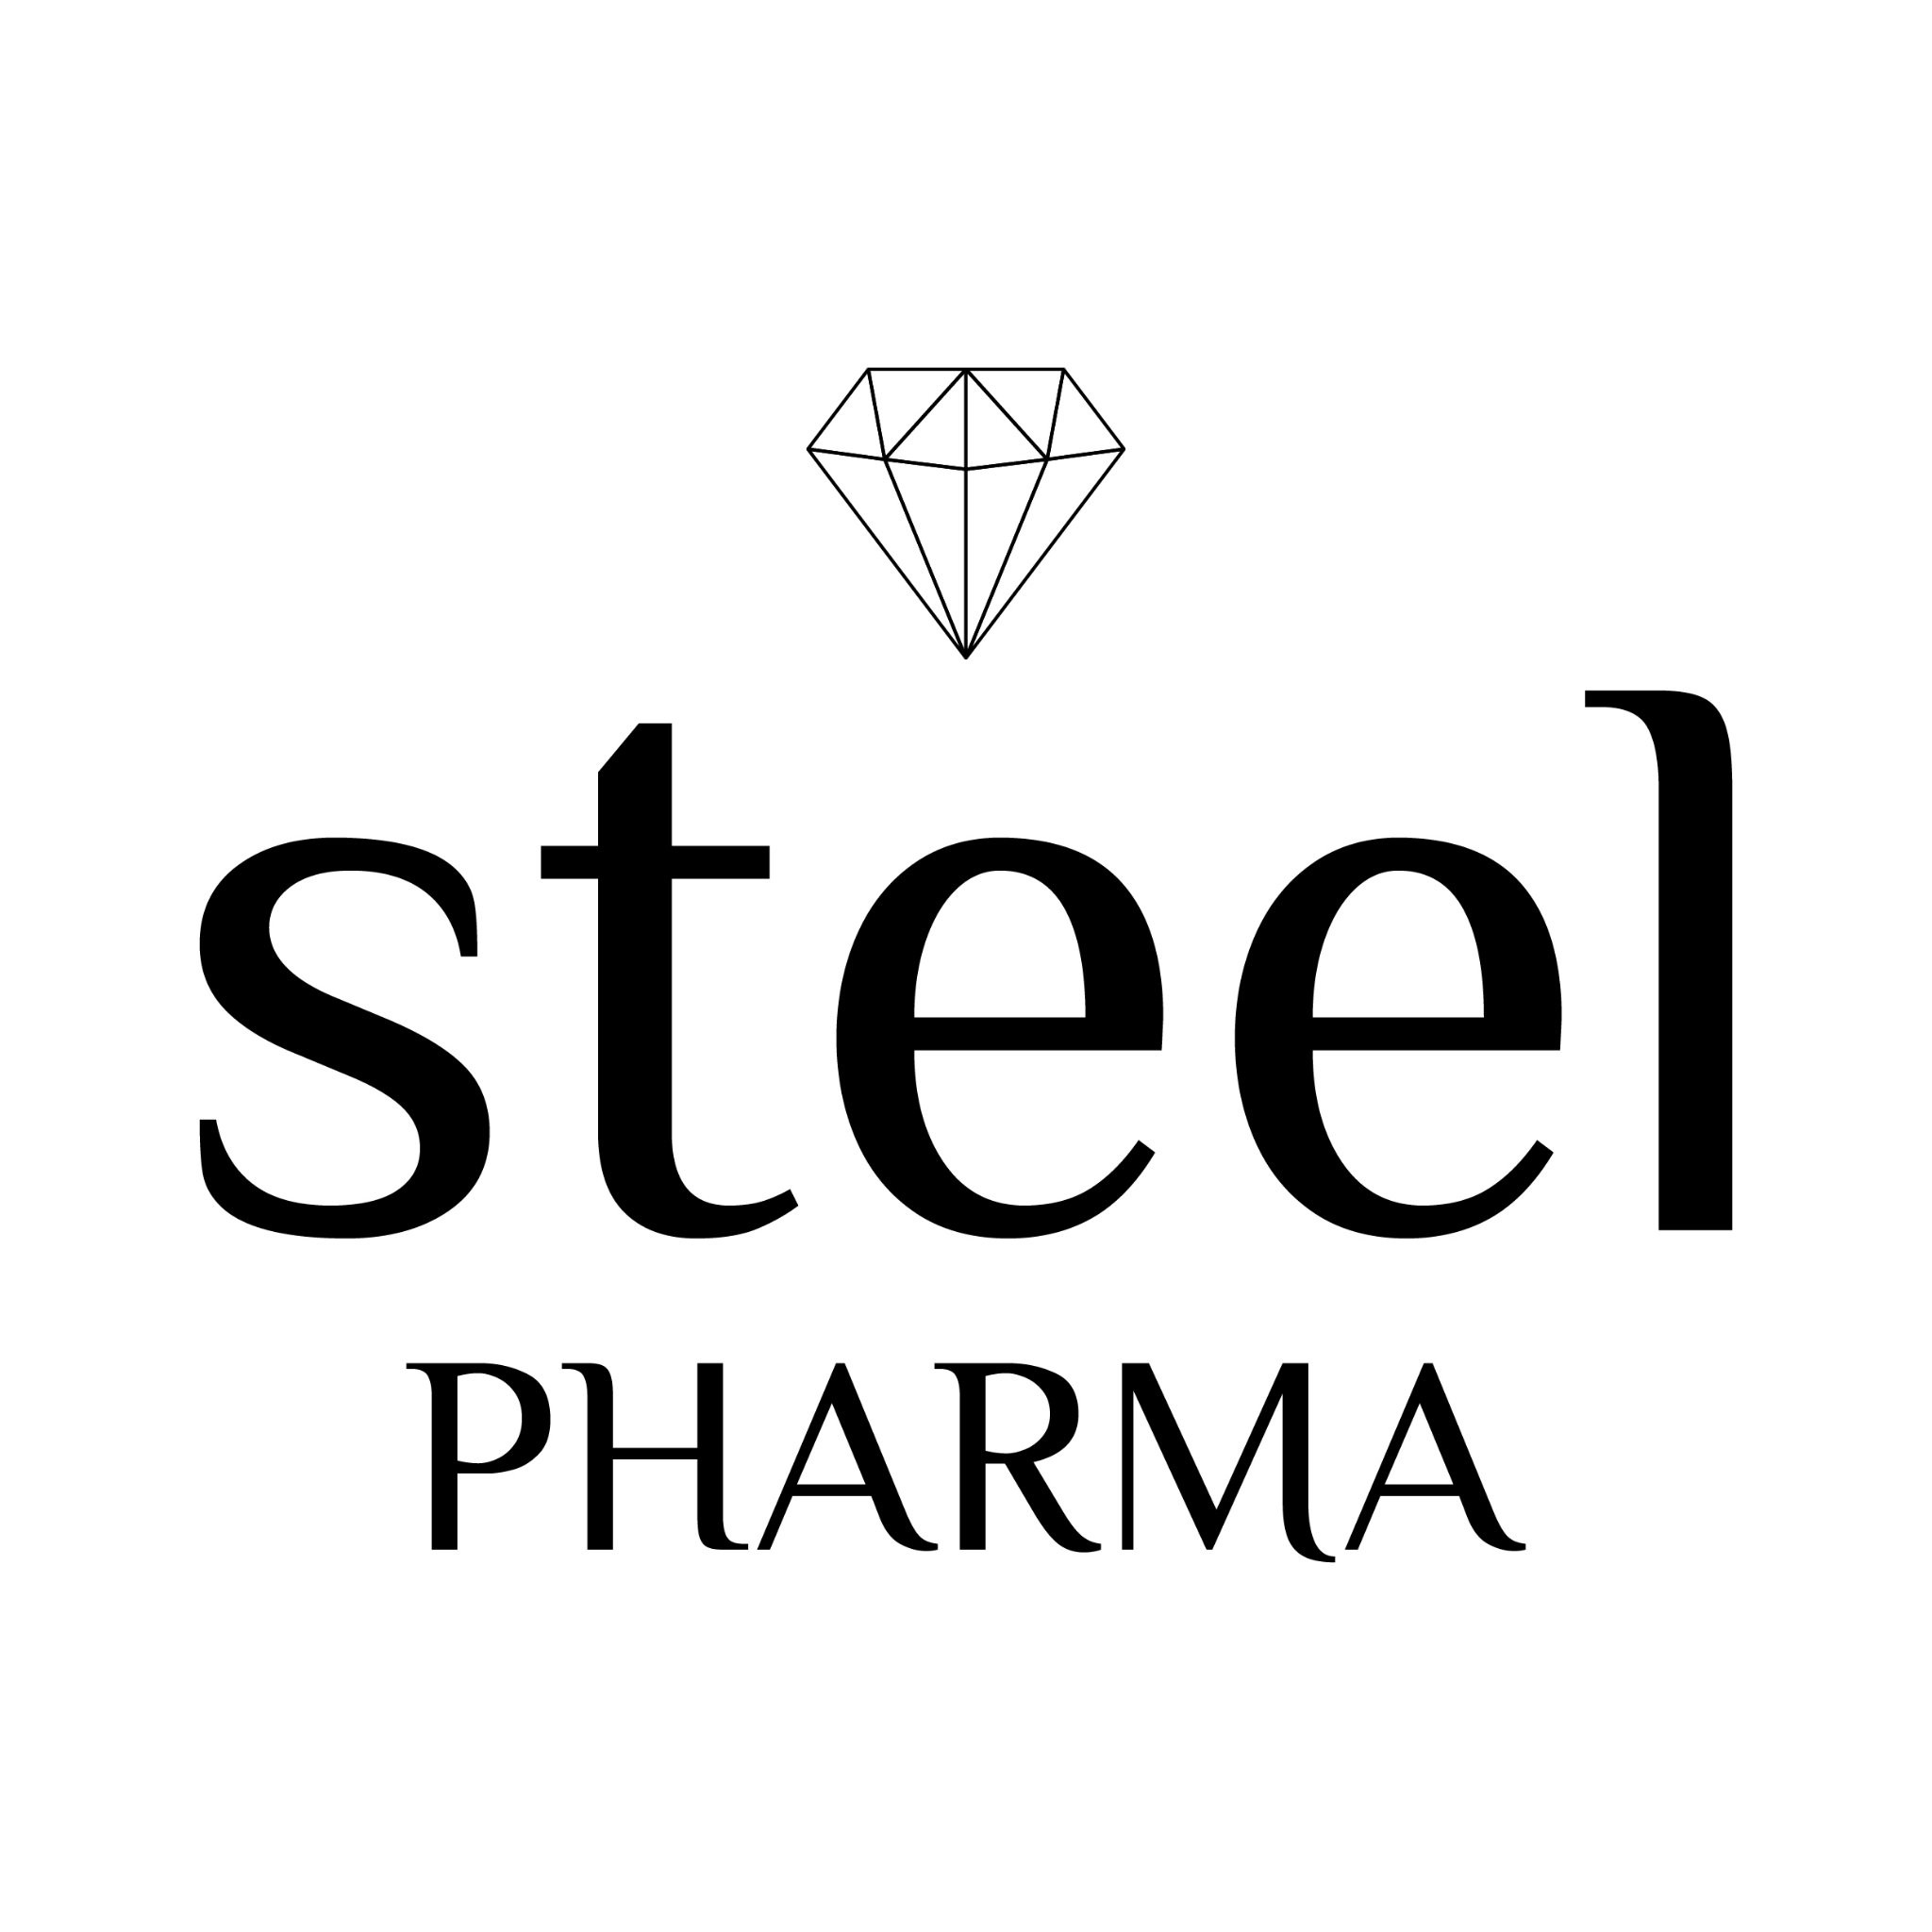 Steel Pharma